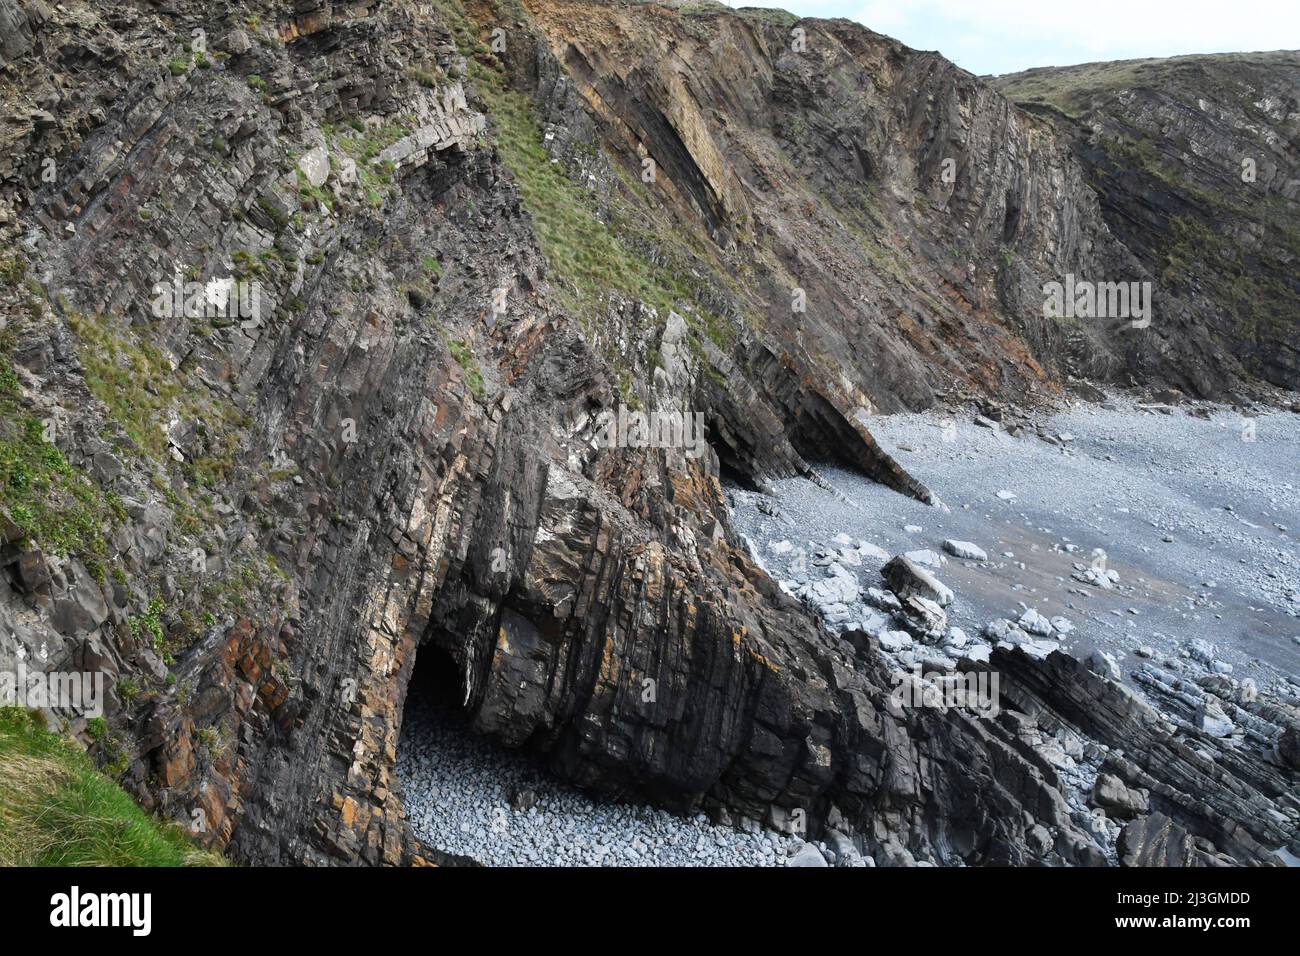 Los acantilados que muestran los estratos torturados en Hartland Quay en Devon mostrando una secuencia espectacular plegada de shales grises alternantes y areniscas k Foto de stock